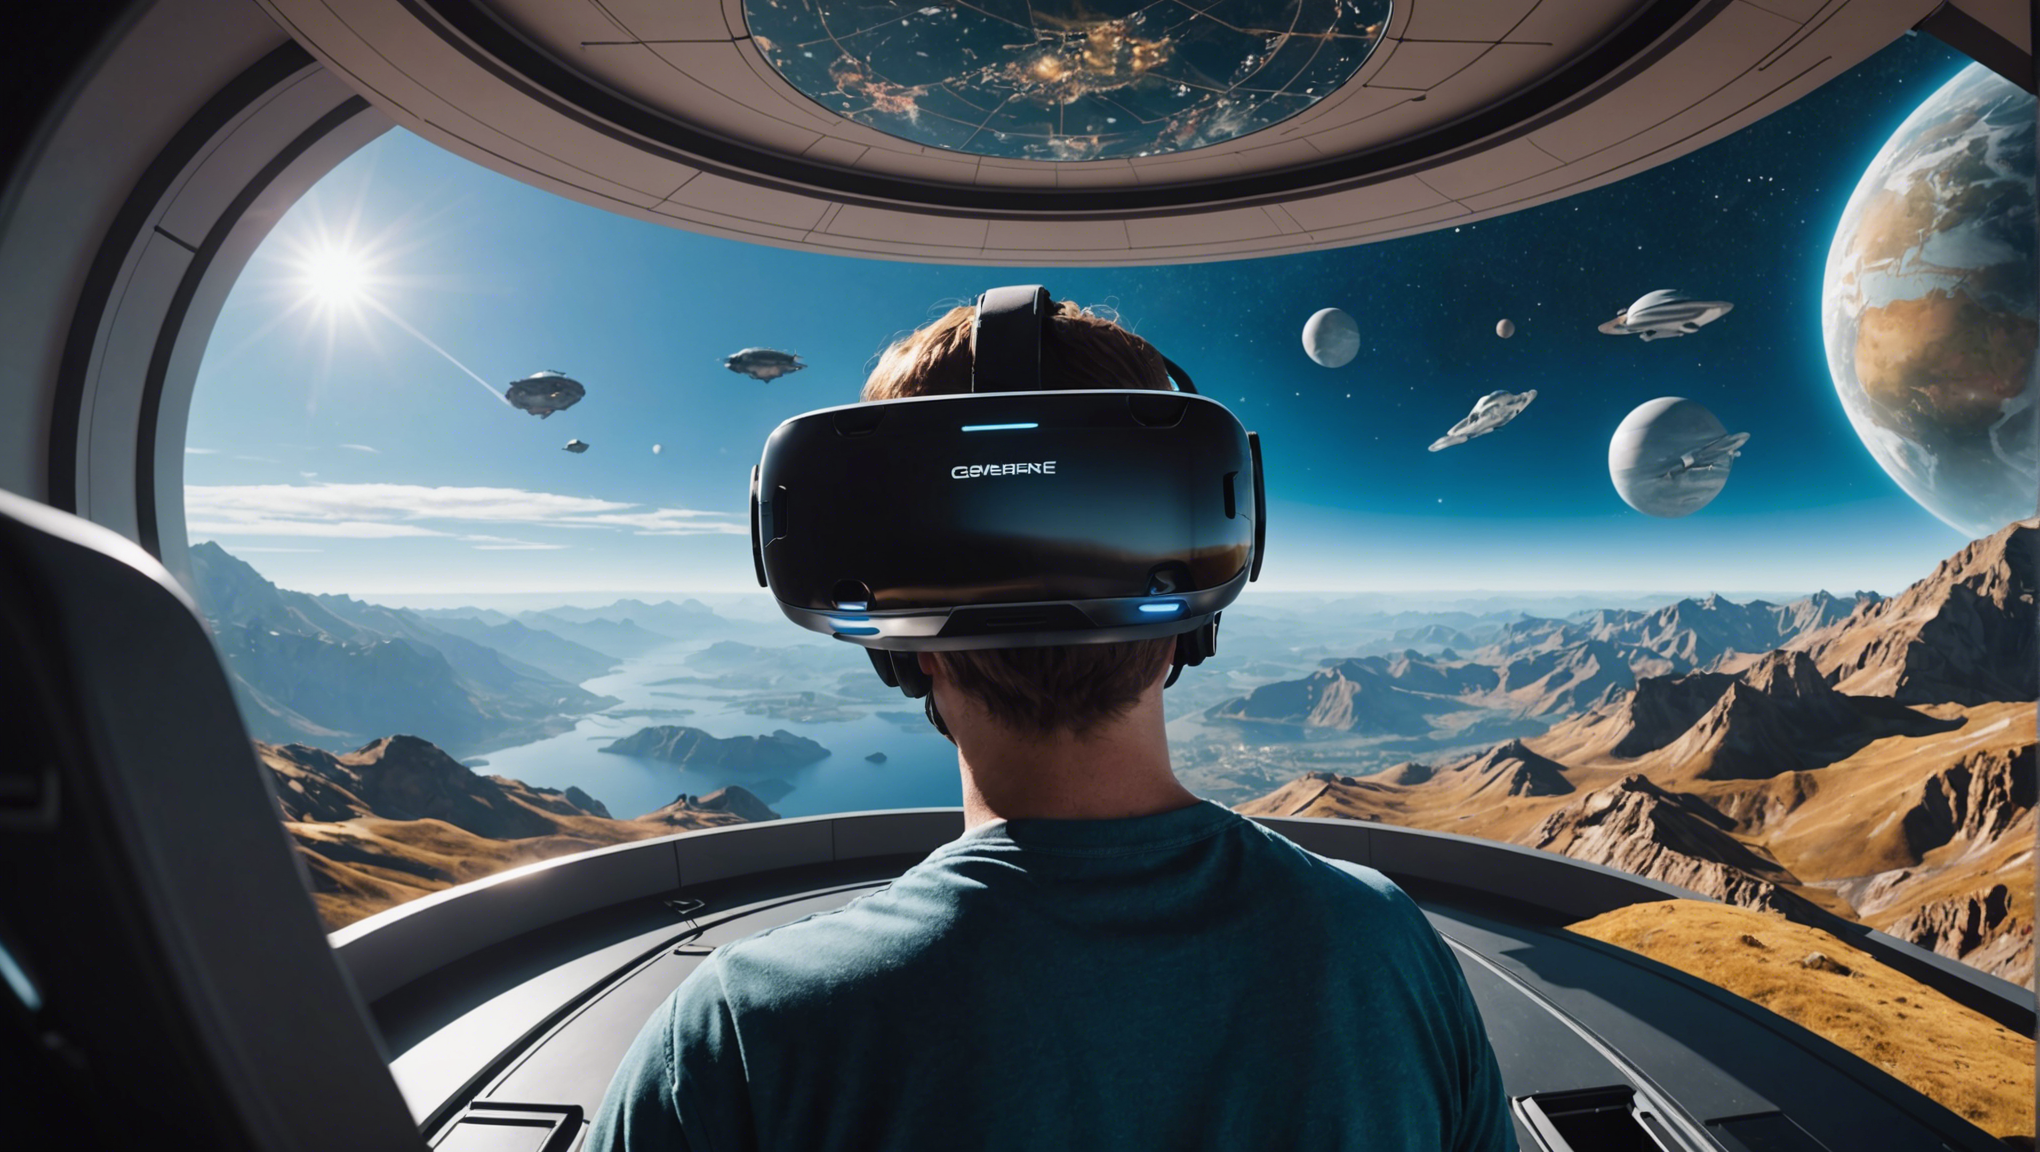 découvrez l'expérience immersive d'un voyage spatial en réalité virtuelle et plongez dans une aventure intergalactique unique.